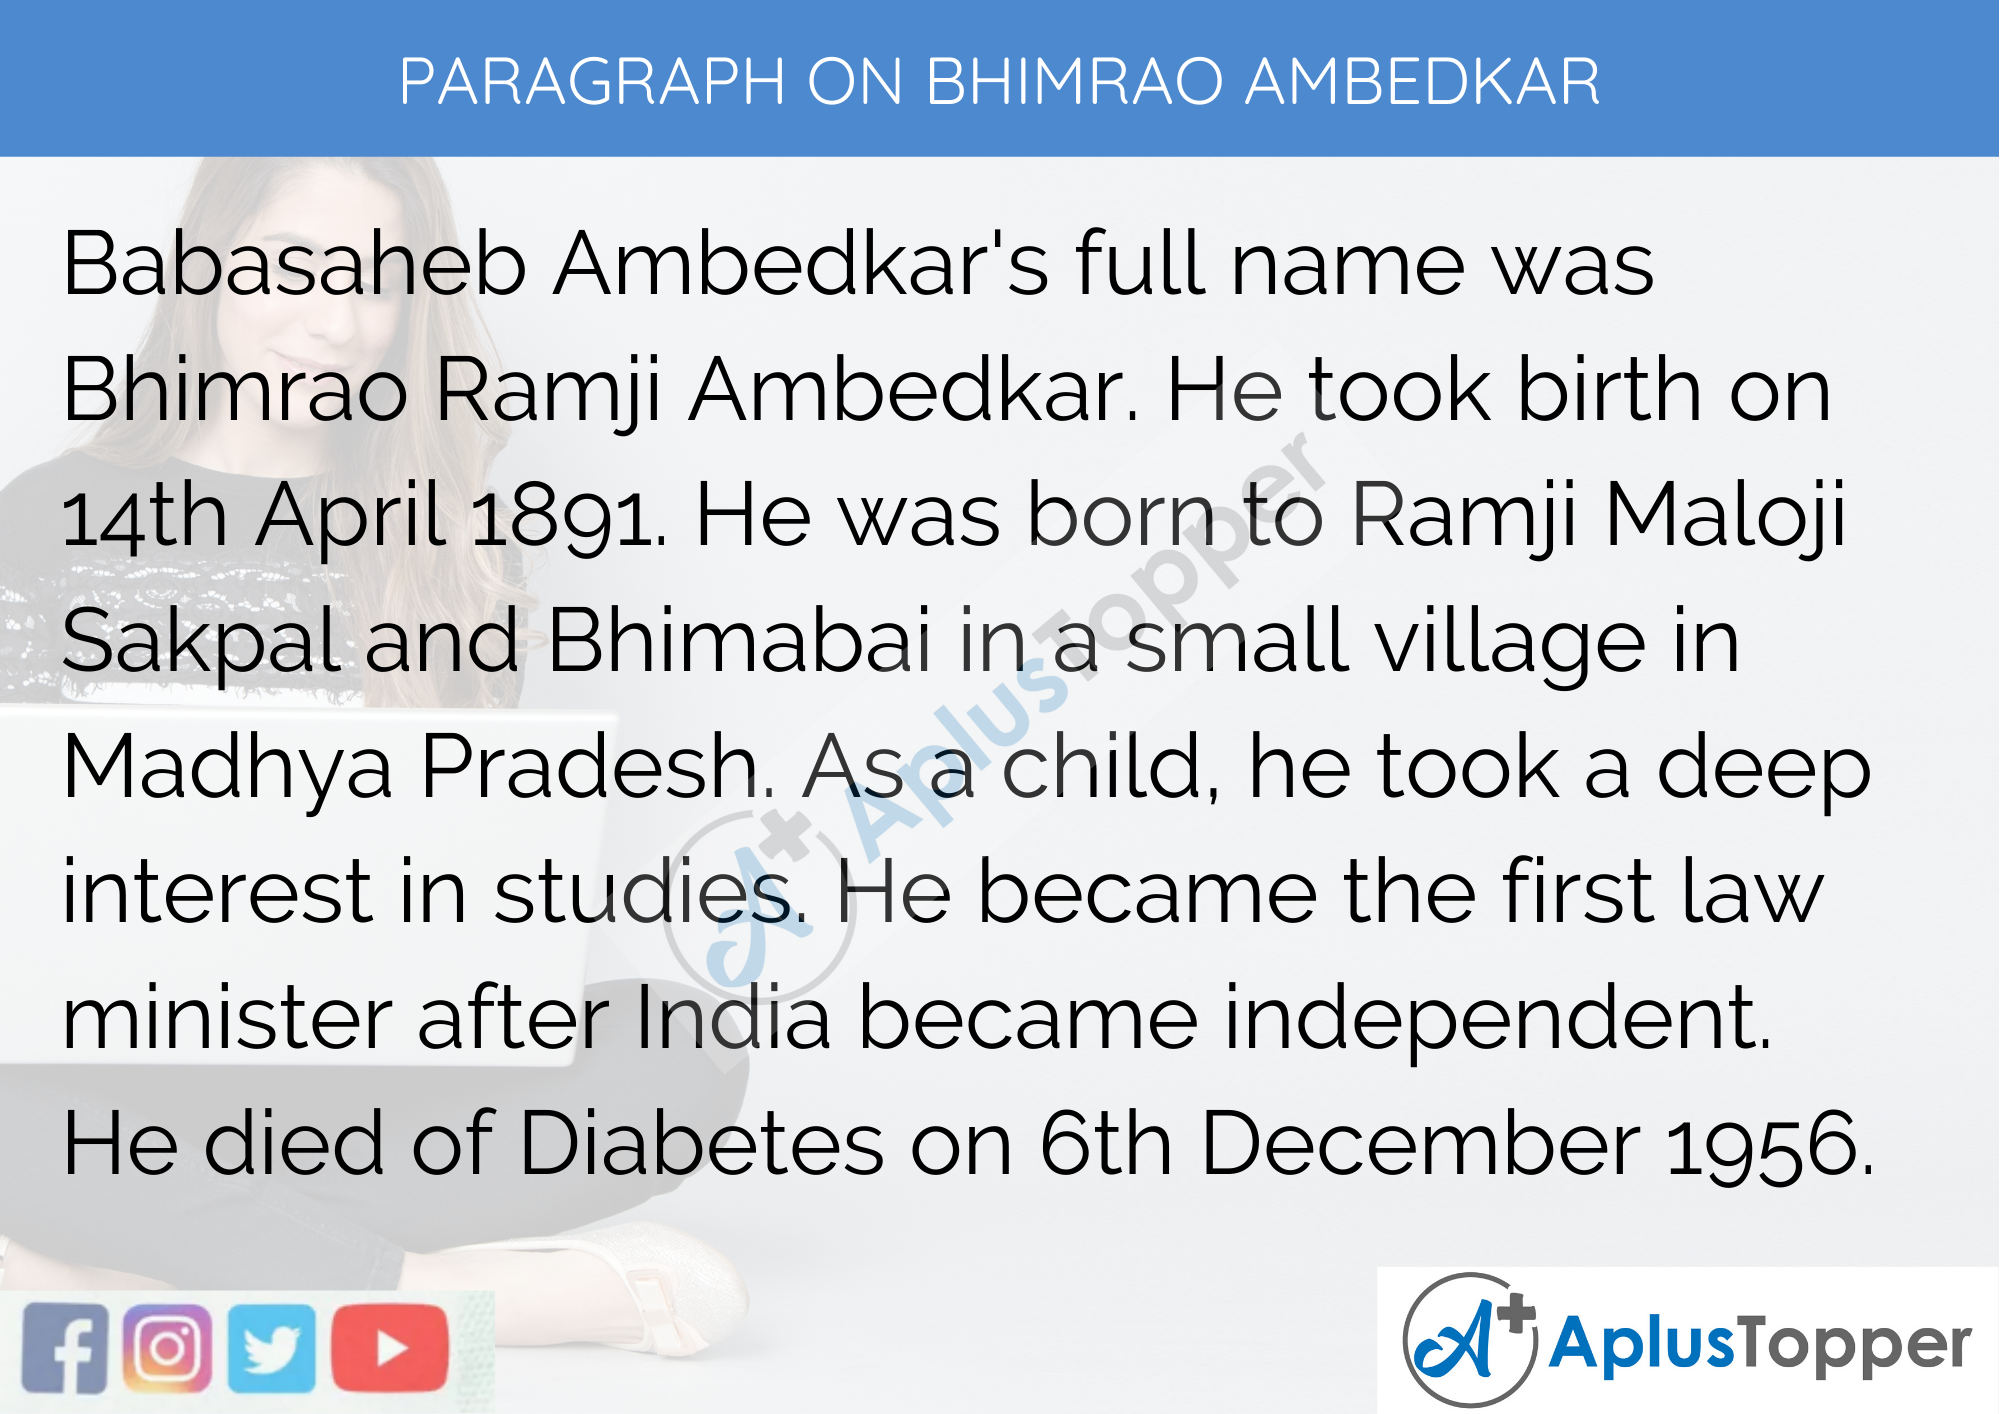 short essay on dr br ambedkar in hindi